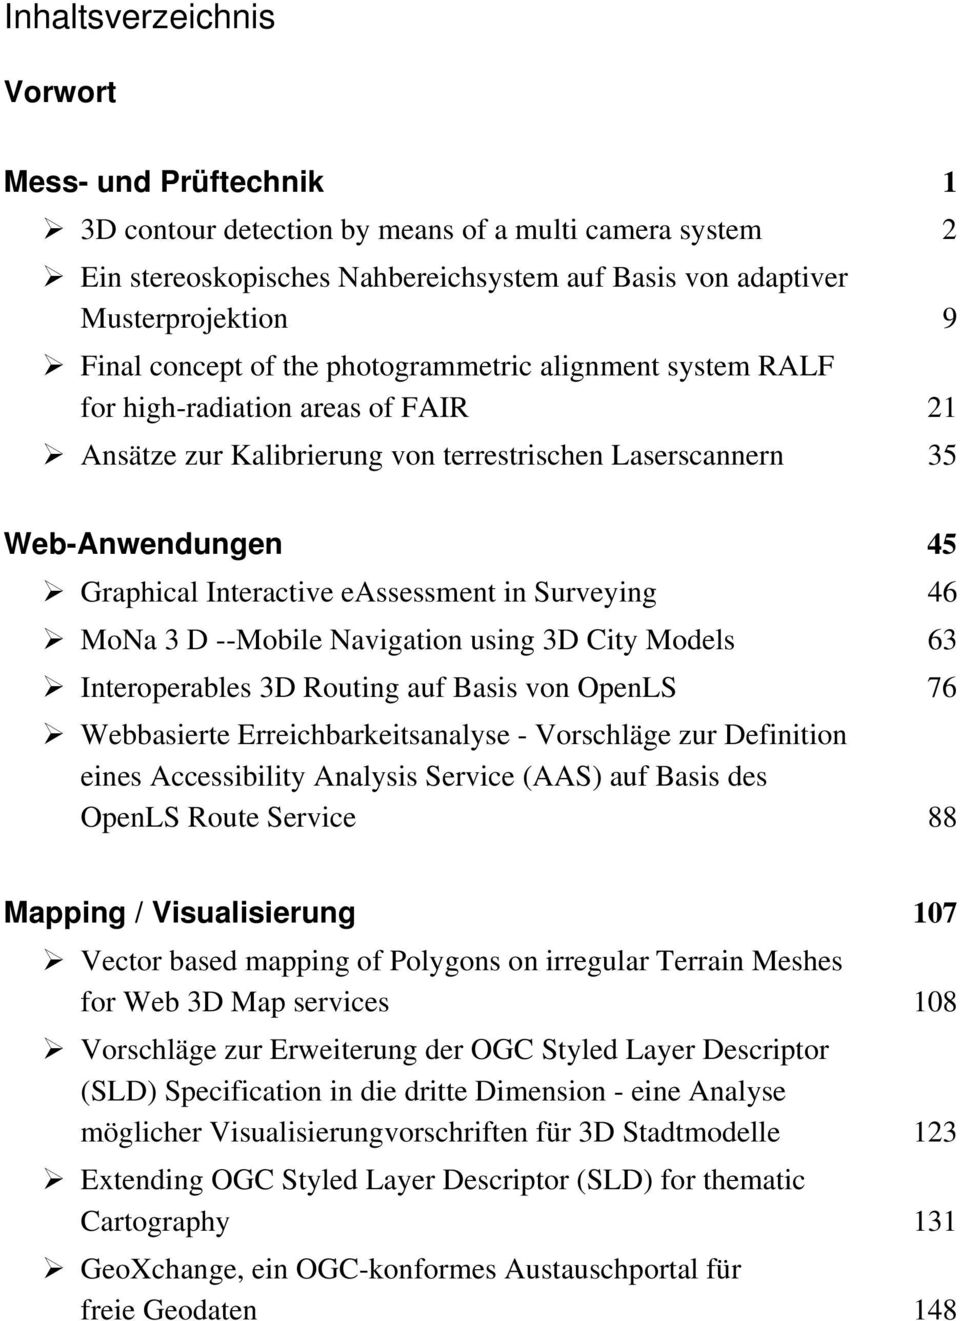 eassessment in Surveying 46 MoNa 3 D --Mobile Navigation using 3D City Models 63 Interoperables 3D Routing auf Basis von OpenLS 76 Webbasierte Erreichbarkeitsanalyse - Vorschläge zur Definition eines